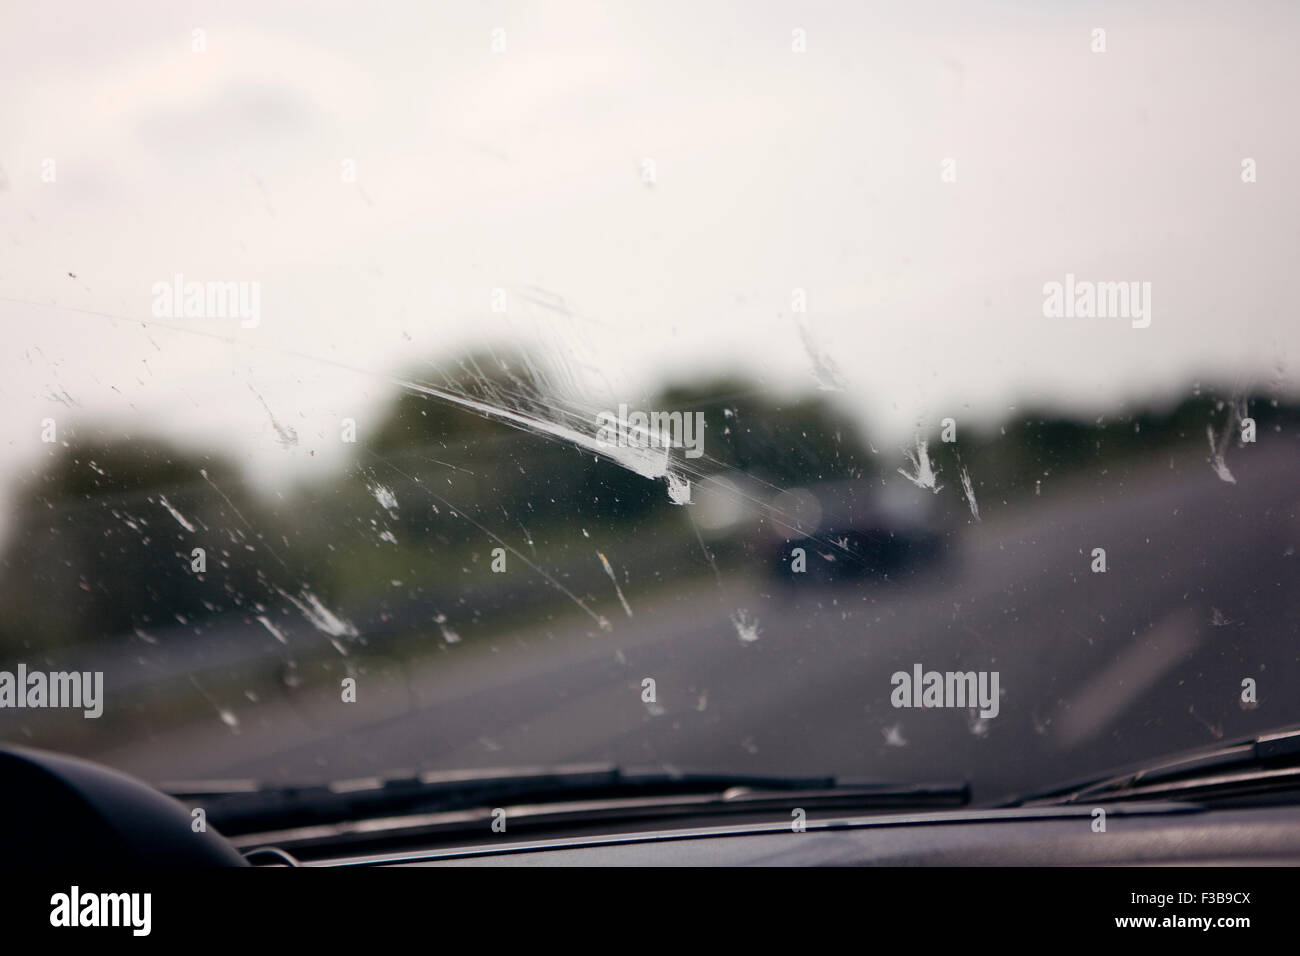 Dead flies splattered on a car windscreen Stock Photo